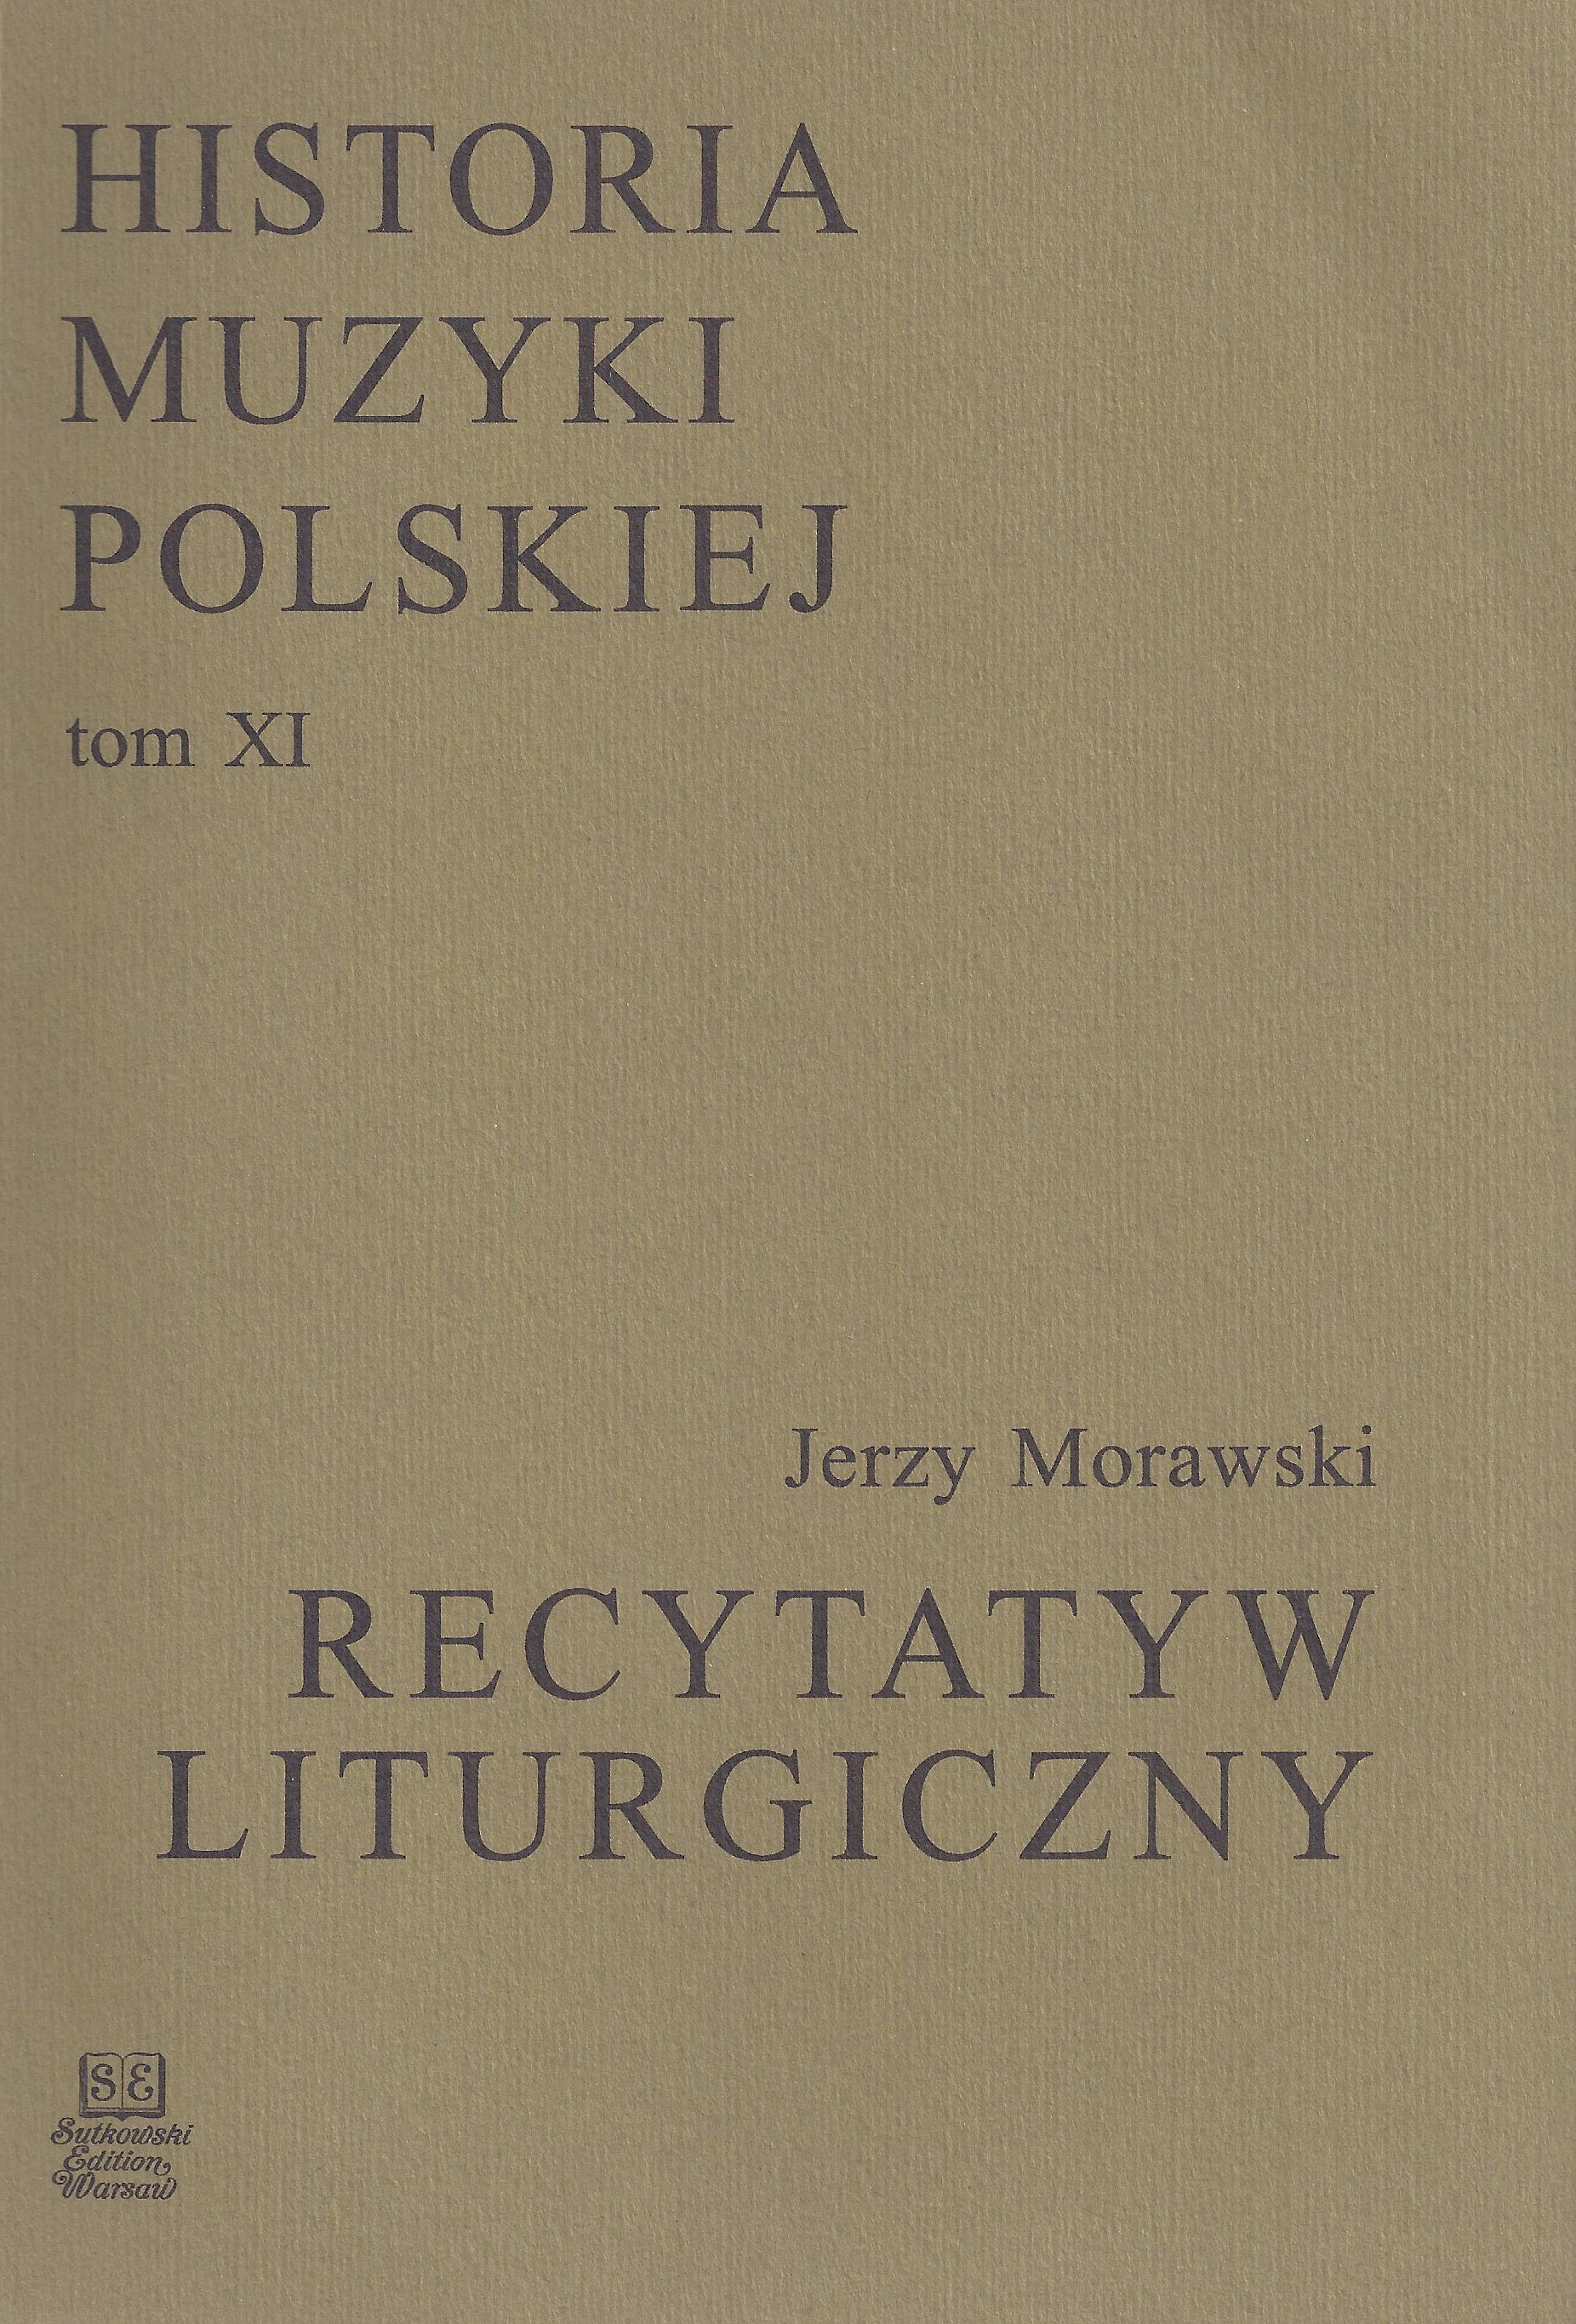 Historia Muzyki Polskiej tom XI – Recytatyw Liturgiczny